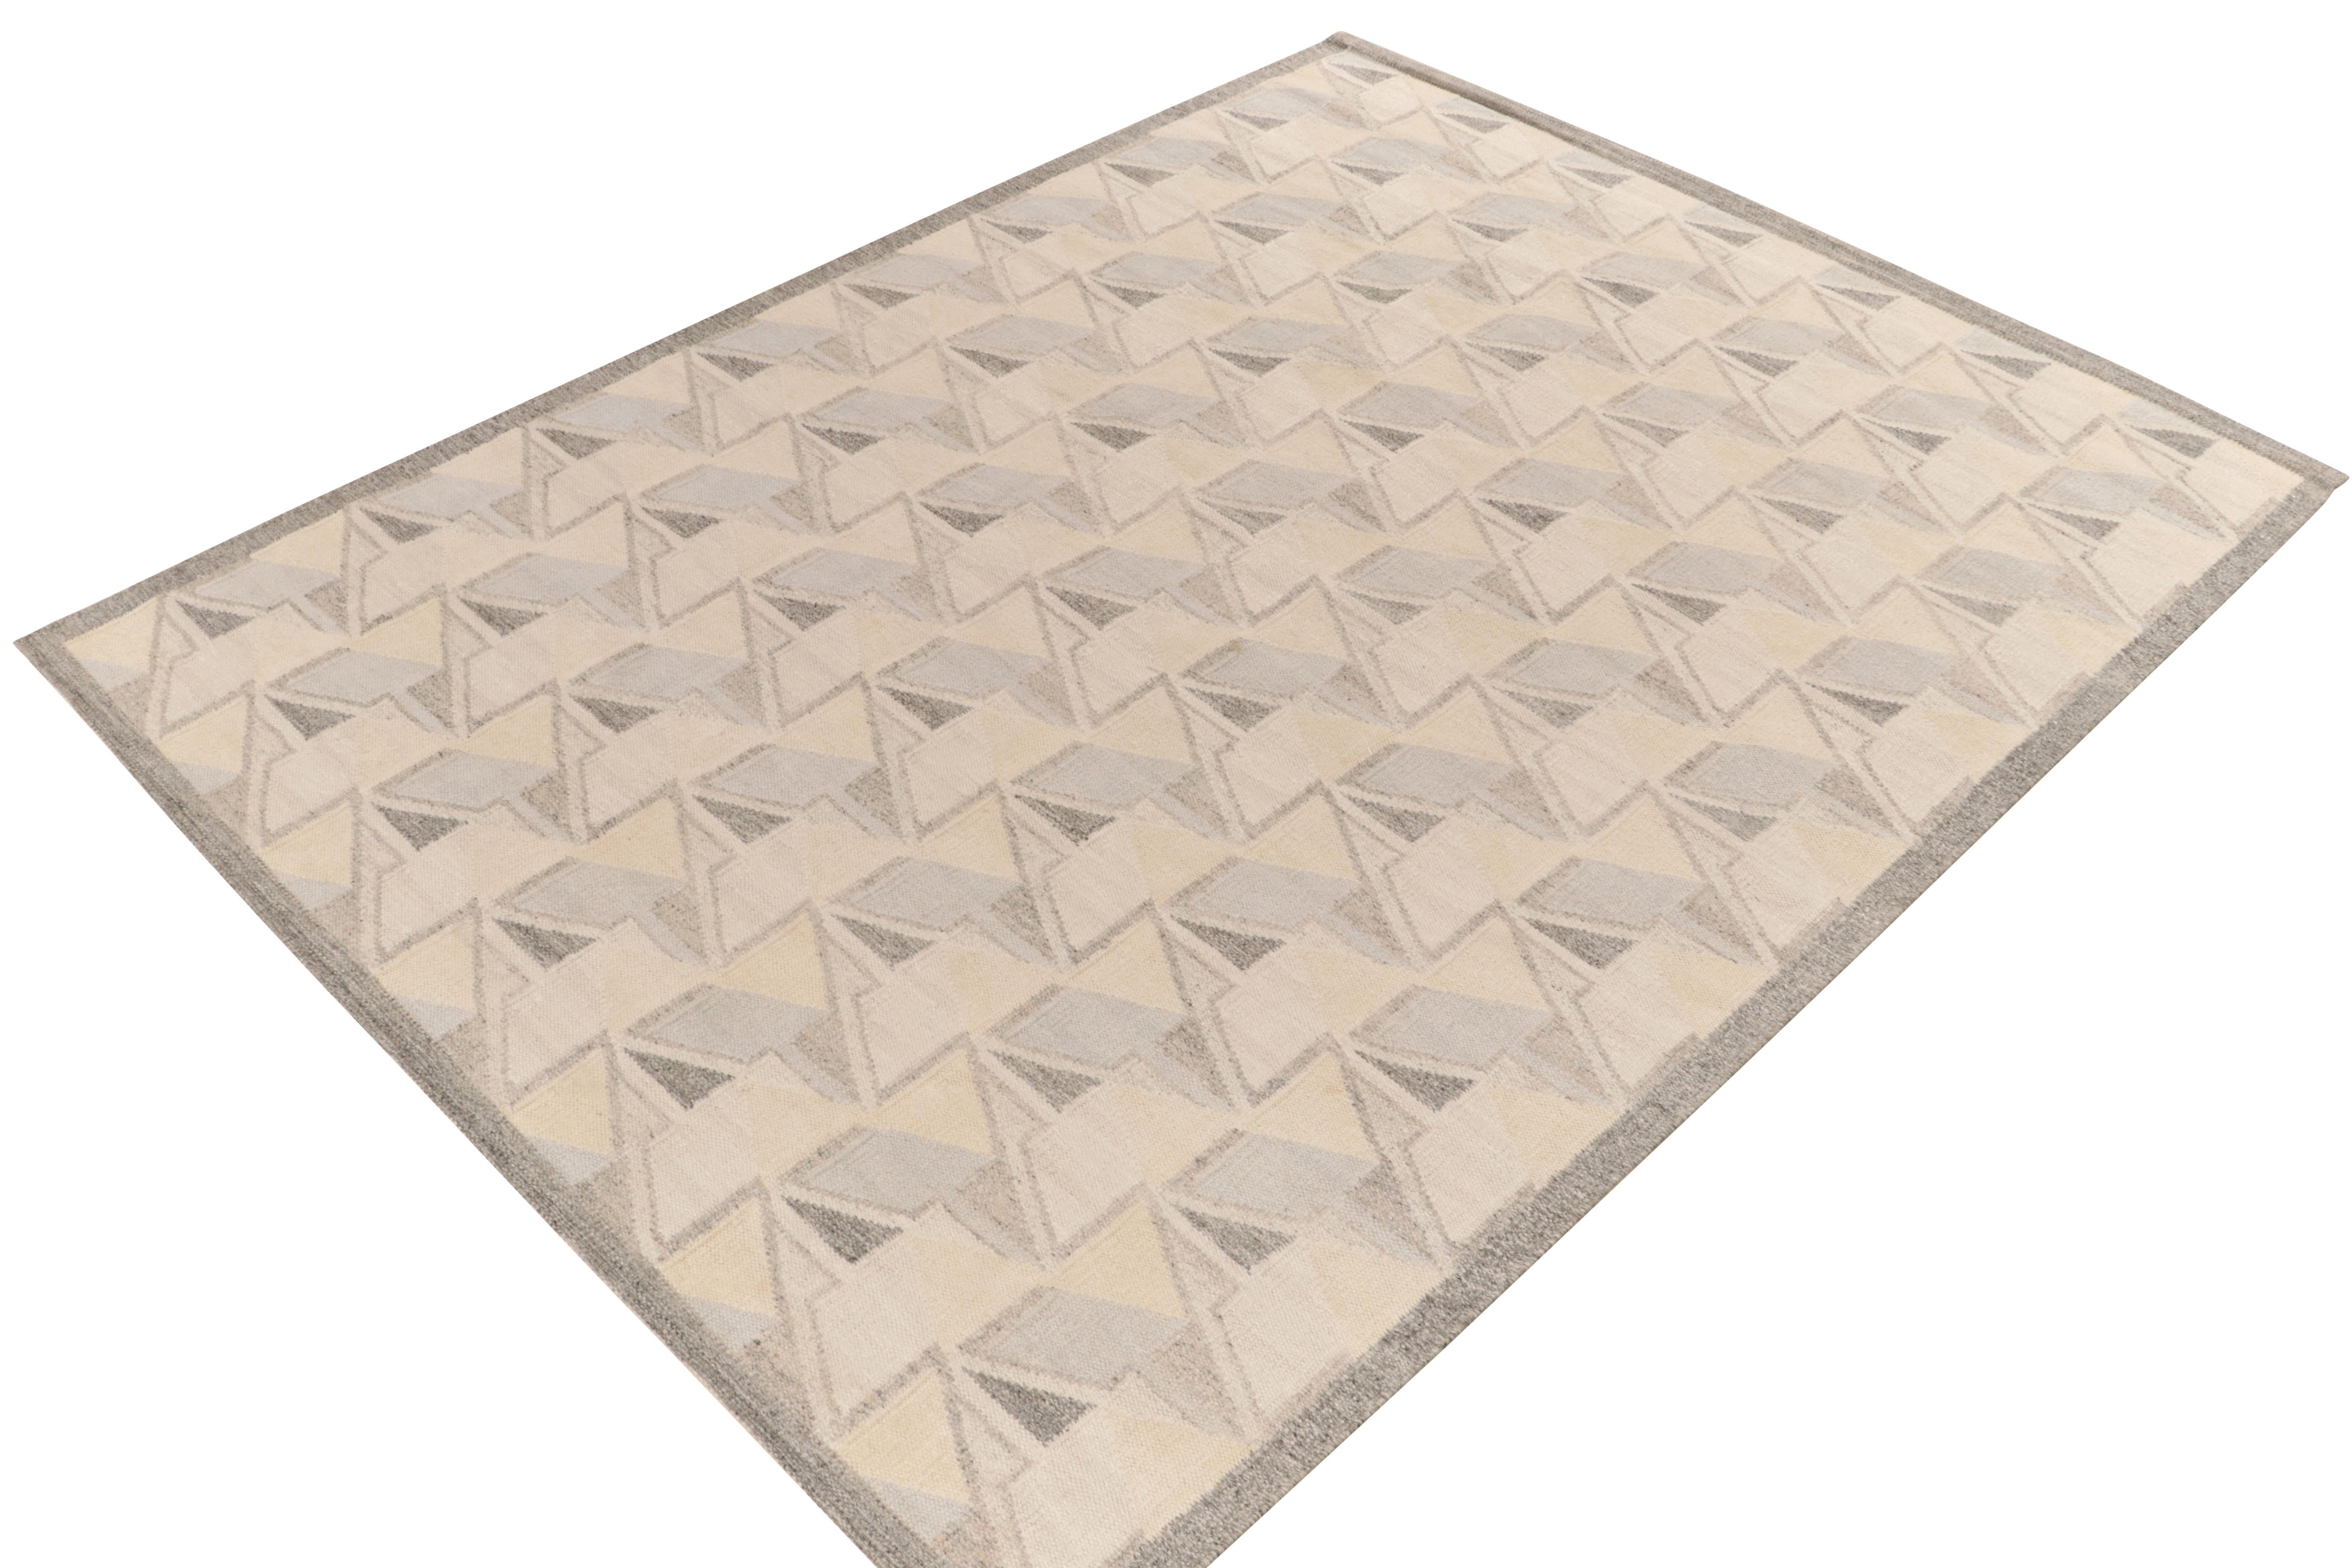 Der skandinavische Kelim von Rug & Kilim aus unserer berühmten Flachgewebe-Kollektion. Dieser Teppich im Format 10x14 genießt die Finesse schwedischer Ästhetik mit einem geschickten geometrischen Muster, das einen 3D-Effekt erzeugt. Die Farbgebung